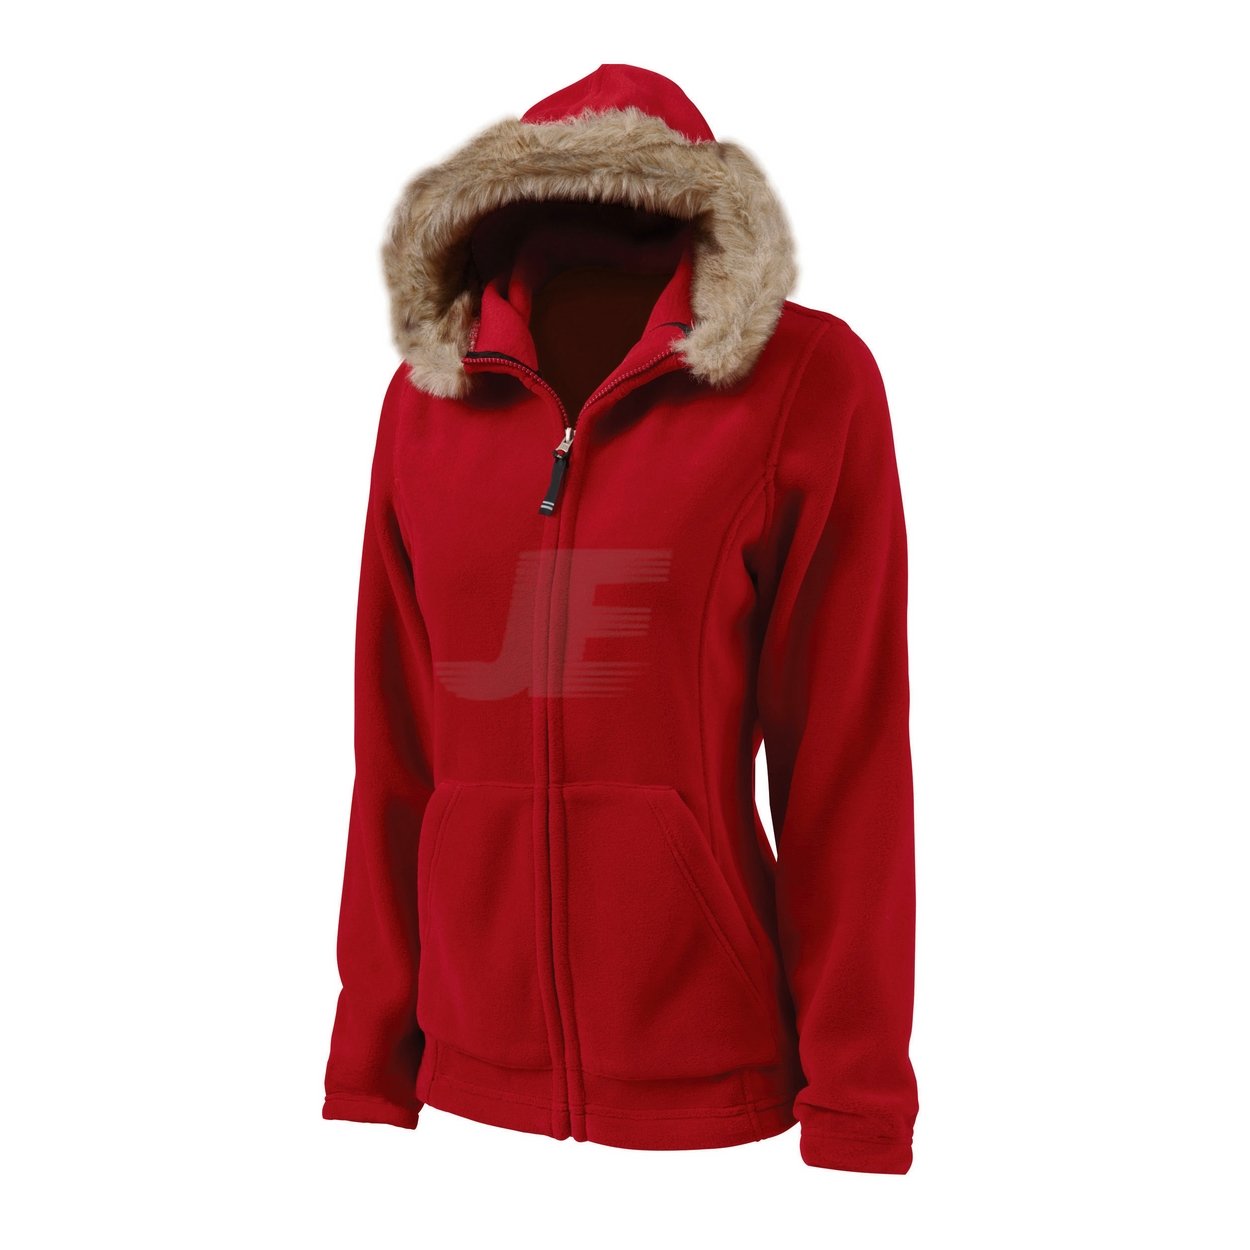 Women Red Zip Up Polar Fleece Hoodie with Fur